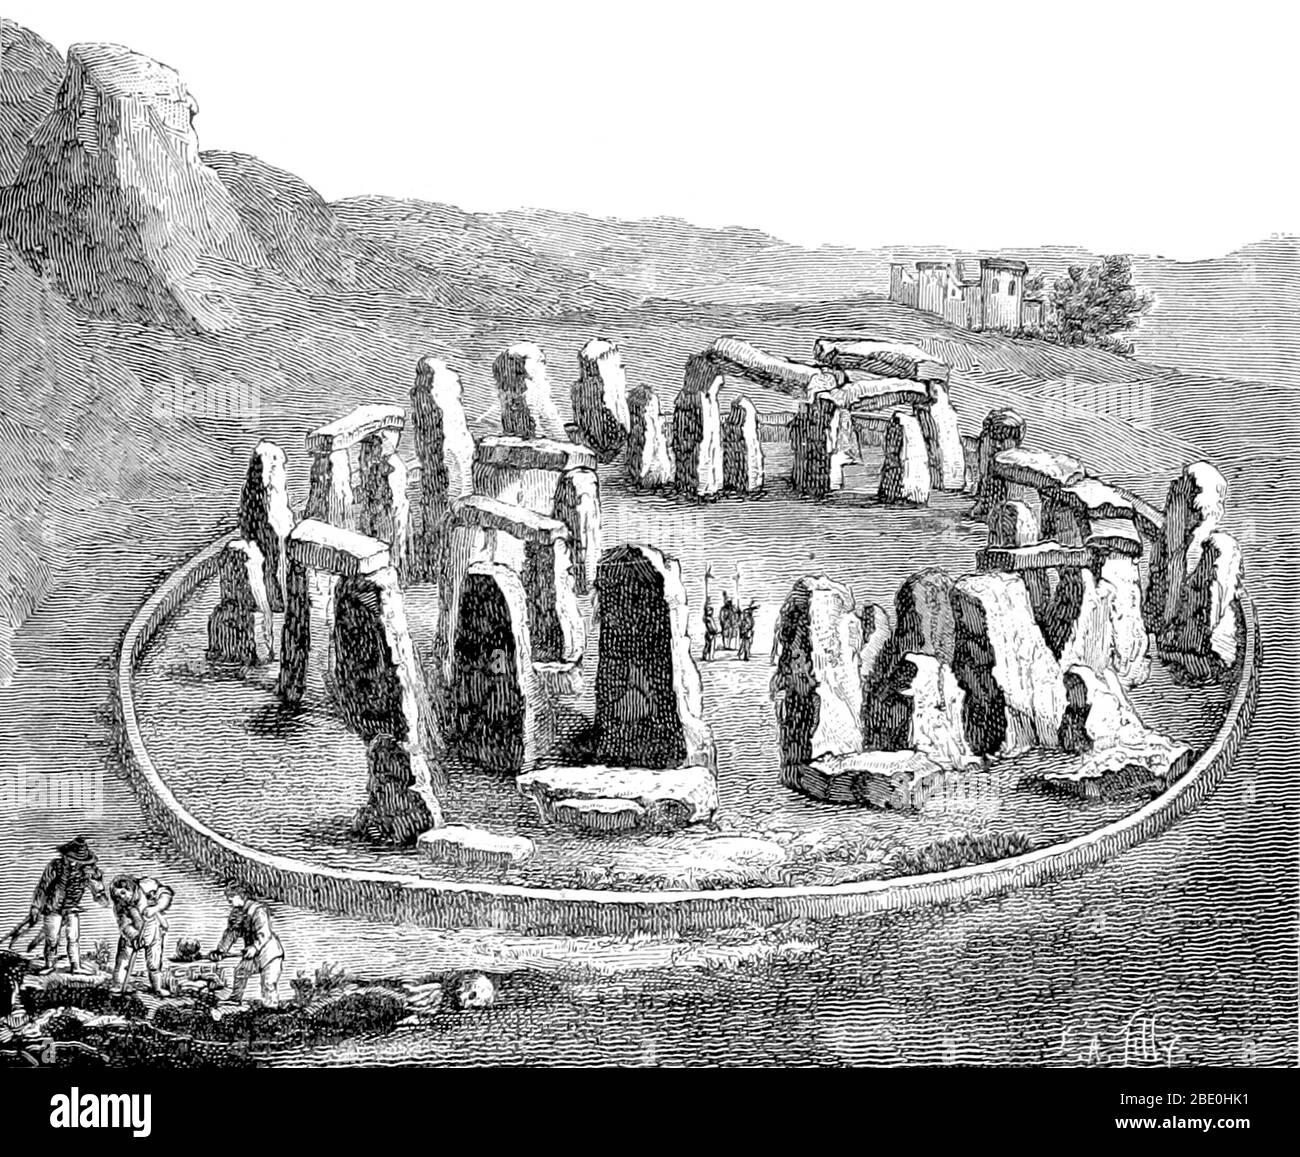 Stonehenge è un monumento preistorico situato nel Wiltshire, Inghilterra. Uno dei siti più famosi al mondo, Stonehenge è il resto di un anello di pietre erette incastonate all'interno di un terreno di terra. Si trova nel mezzo del complesso più denso dei monumenti del Neolitico e dell'Età del Bronzo in Inghilterra, tra cui diverse centinaia di tumuli funebri. Le prove archeologiche indicano che Stonehenge poteva essere un terreno di sepoltura fin dai suoi primi inizi. Il sito e i suoi dintorni sono stati aggiunti alla lista dei siti Patrimonio Mondiale dell'Umanità dell'UNESCO nel 1986. Immagine tratta dalla pagina 521 di 'la création de l'homme et les premiers âges de Foto Stock